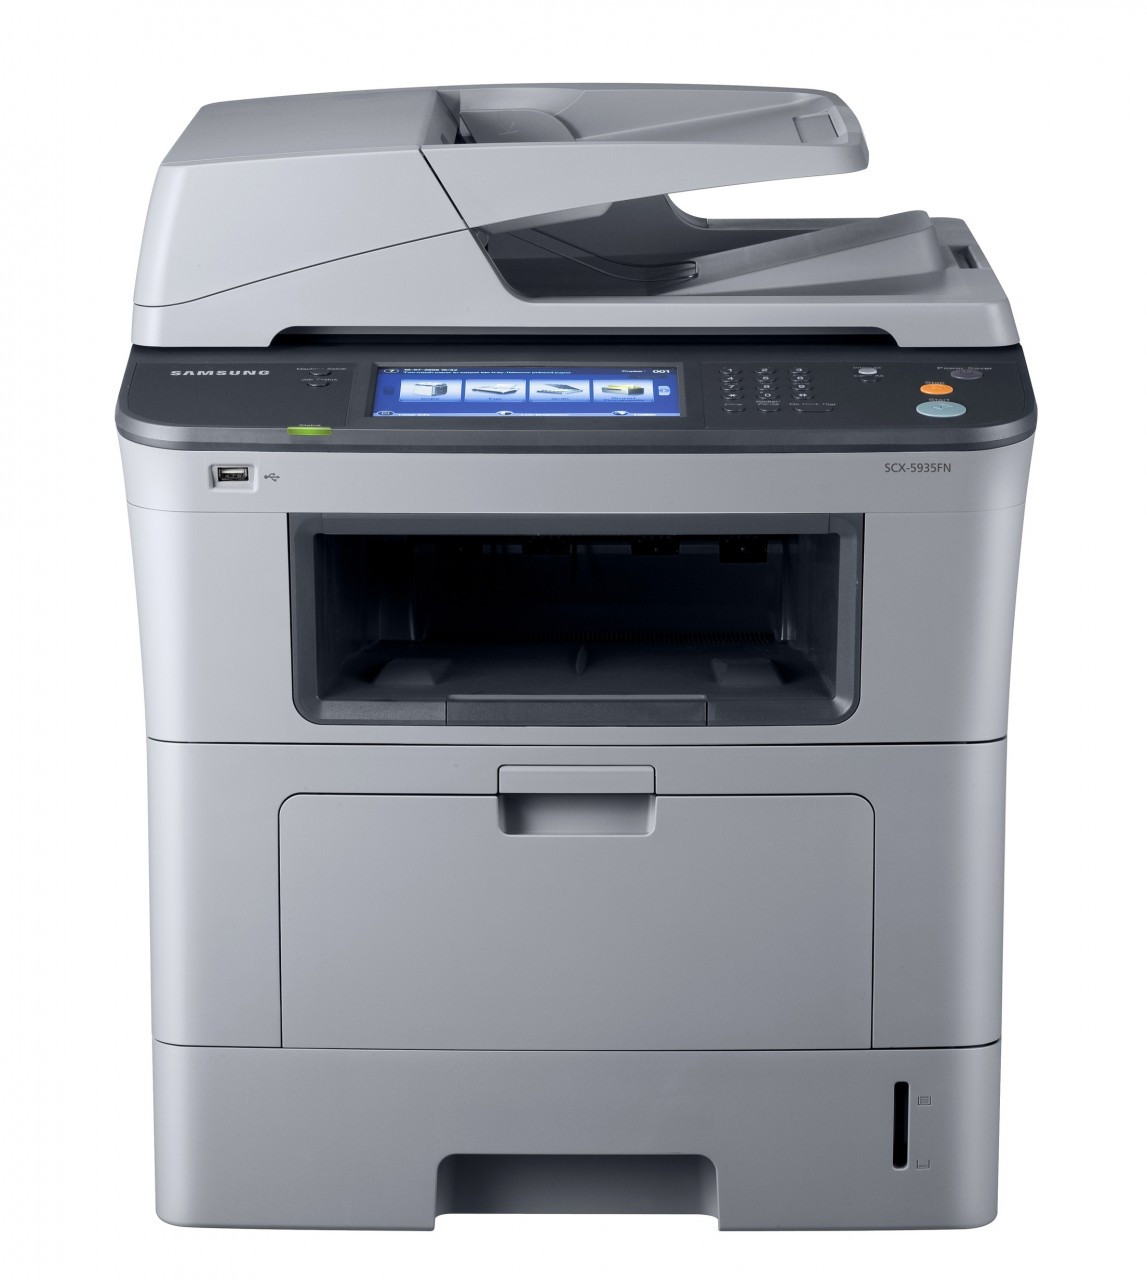 samtidig gispende Putte Samsung SCX-5935FN Multifunction Laser Printer